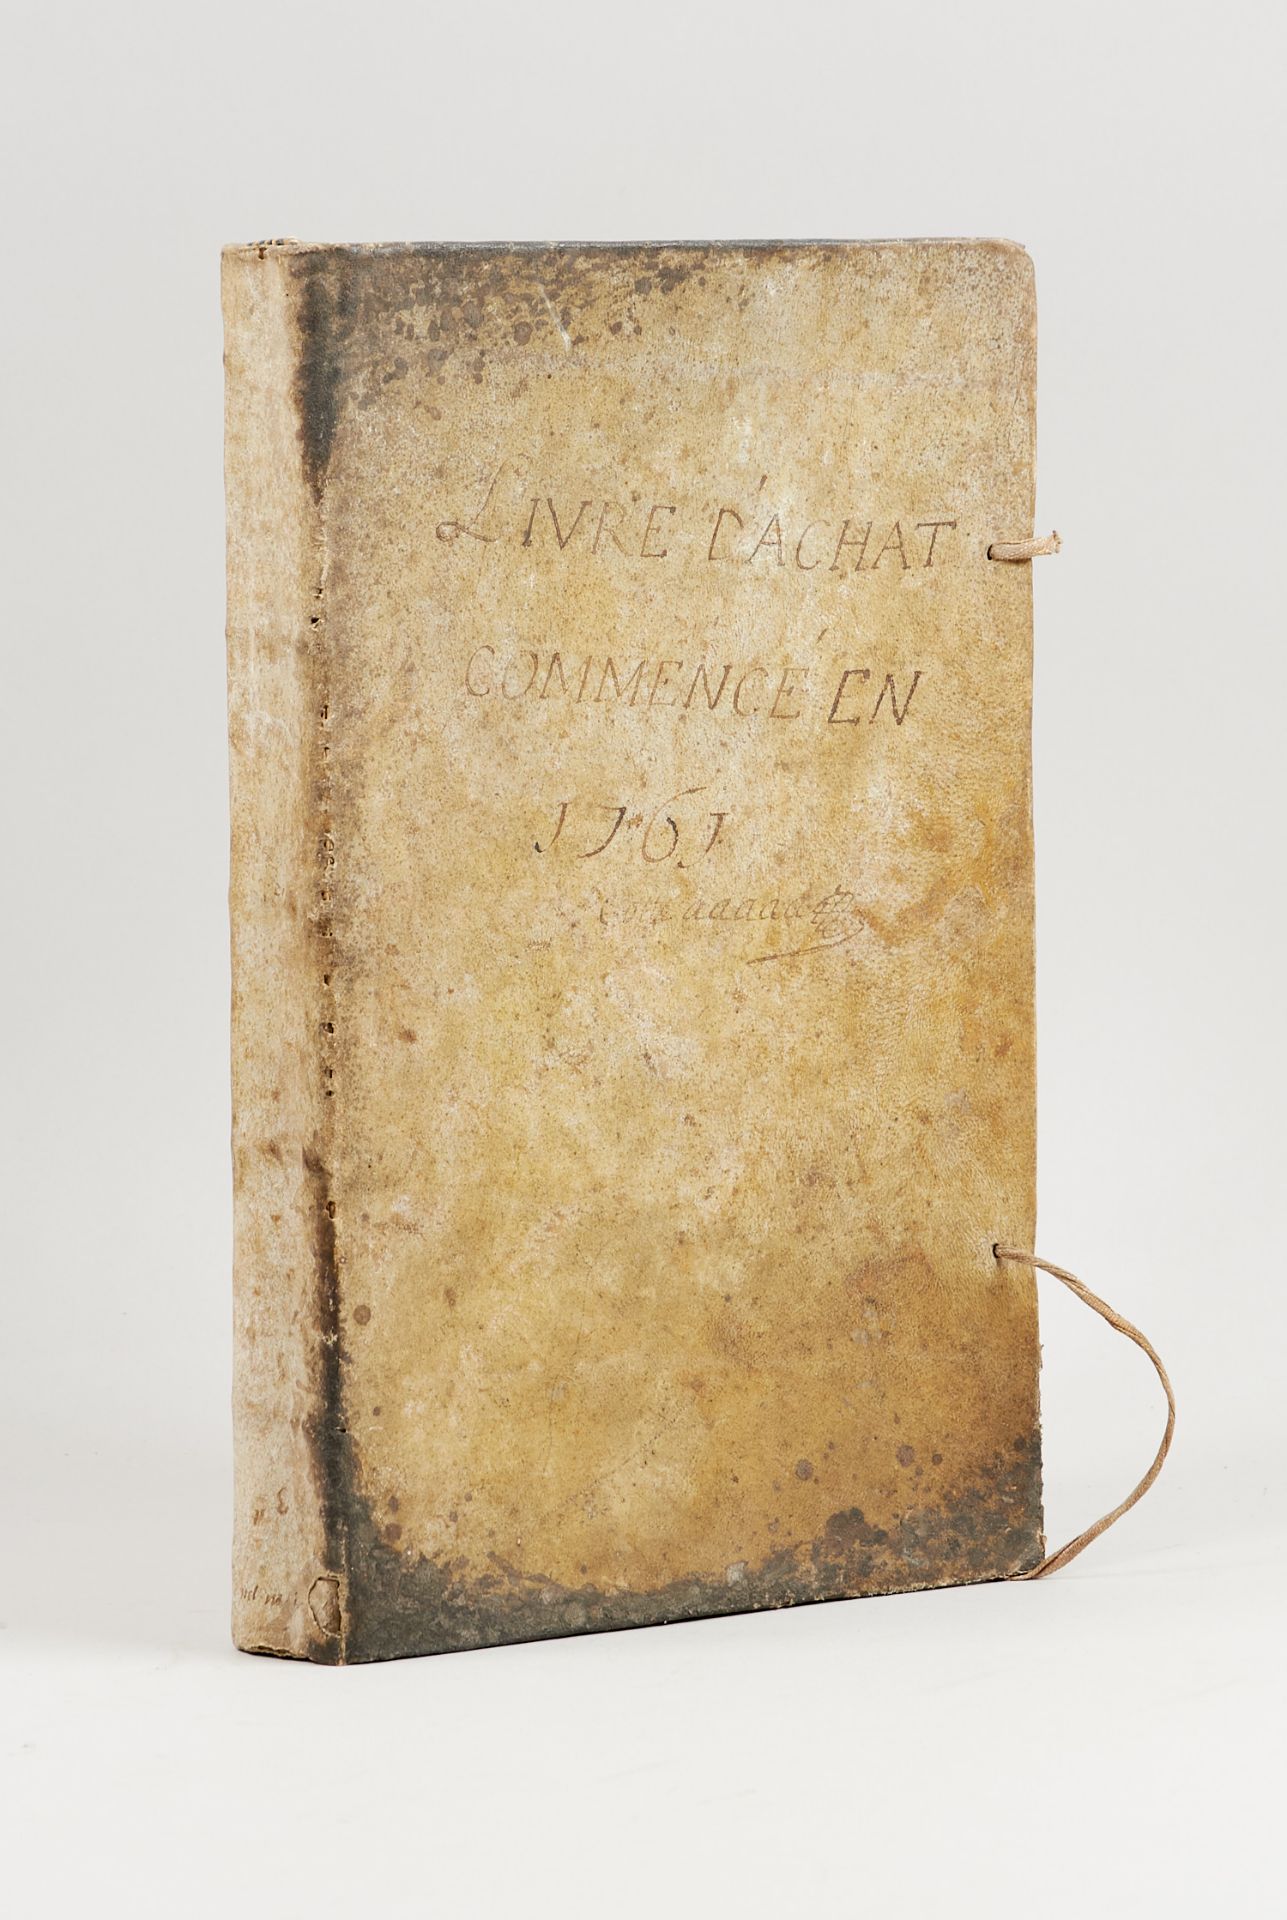 Rechnungsbuch - "Livre d'Achat commencé en 1761".